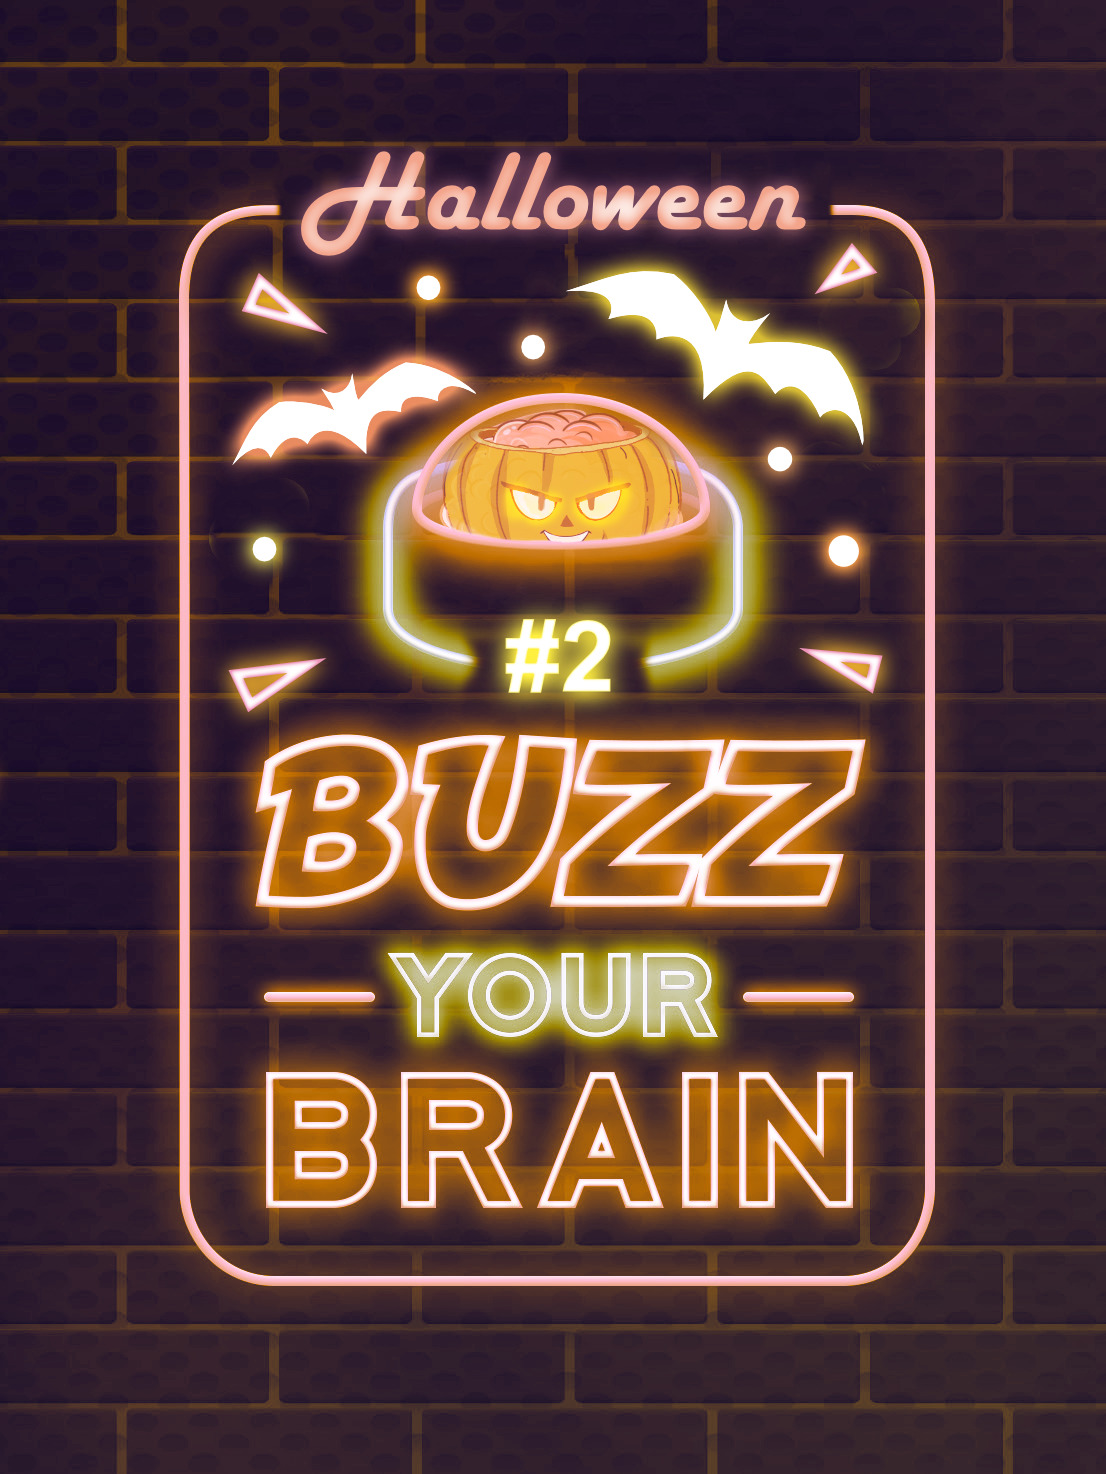 Affiche Buzz your Brain Halloween